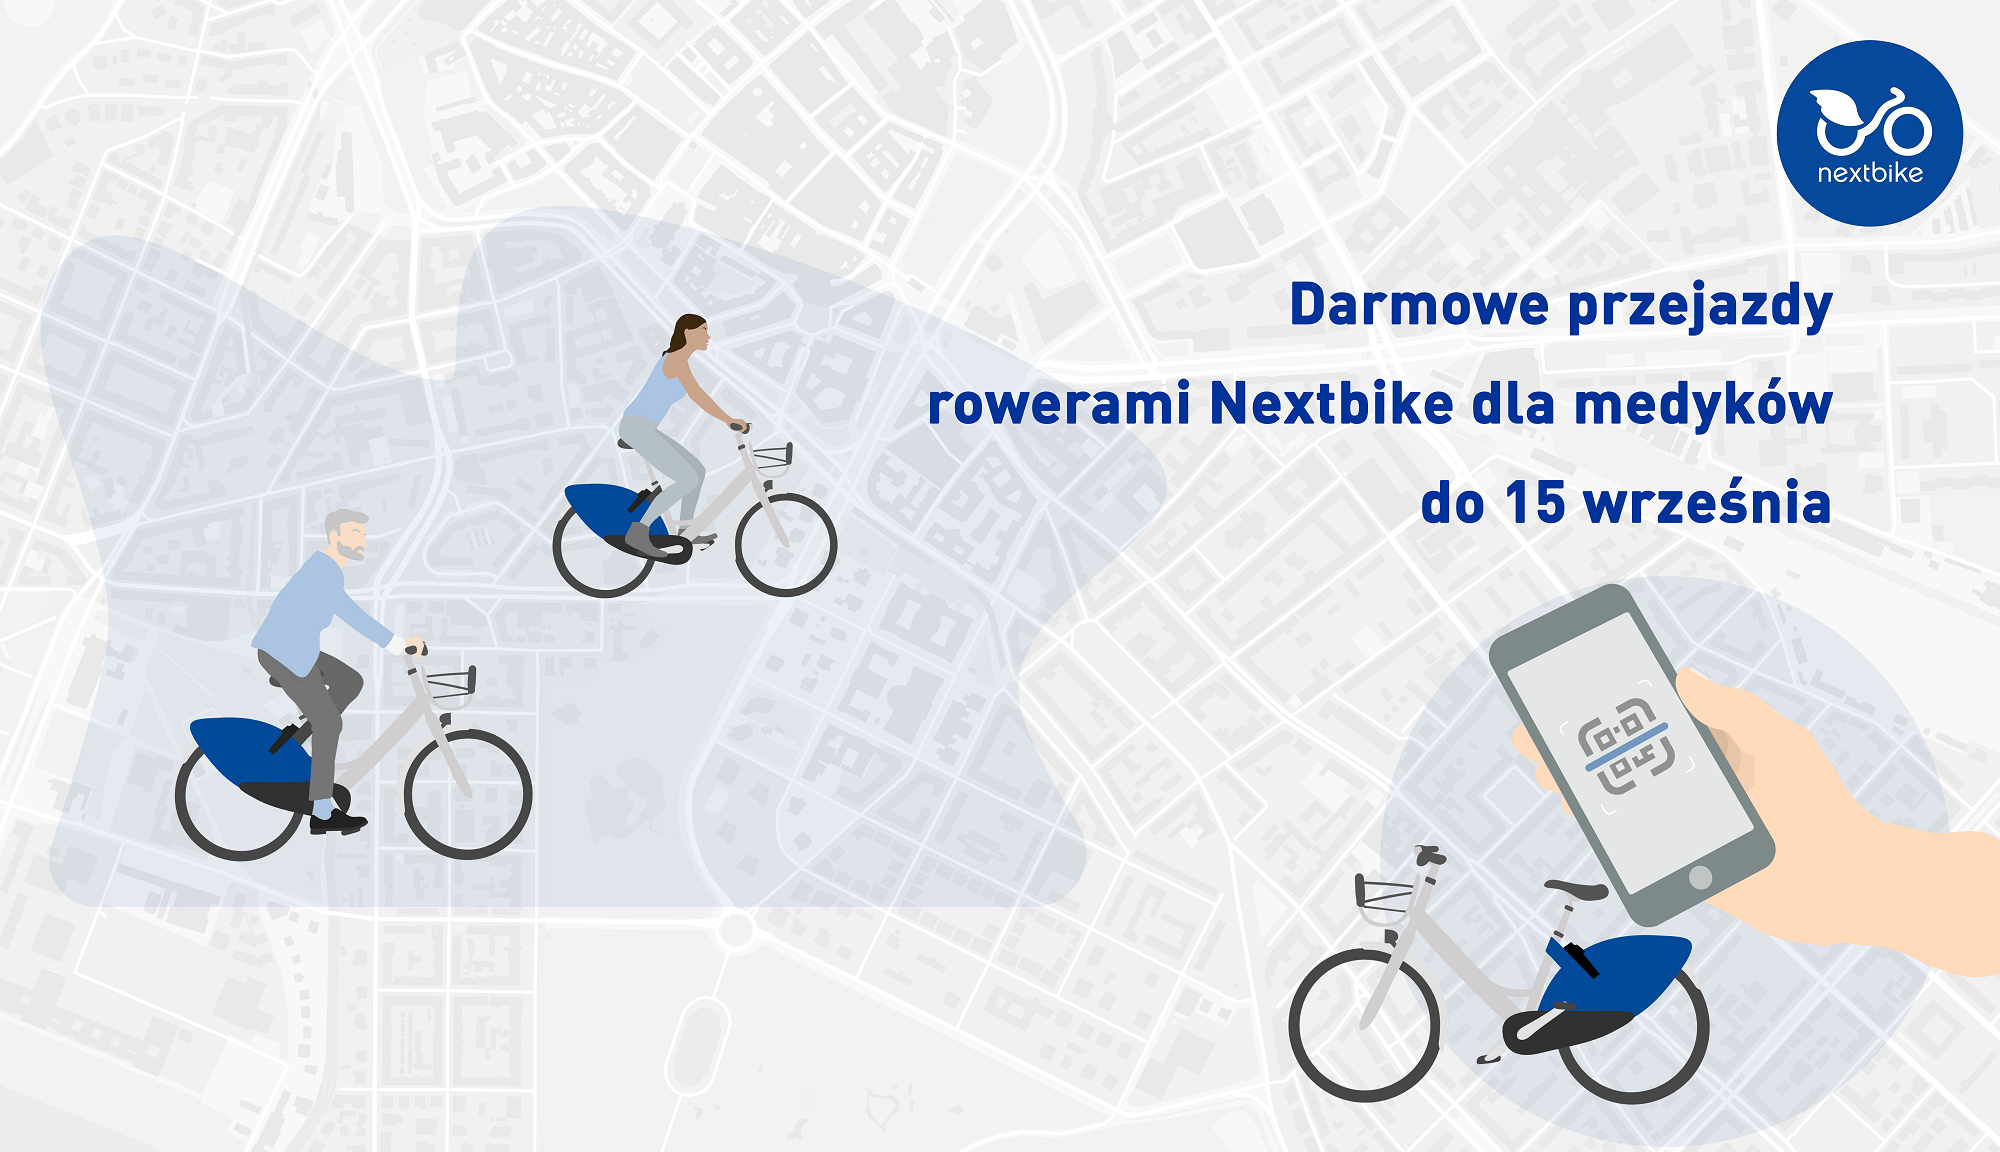 Darmowe przejazdy rowerami Nextbike dla medyków do połowy września!